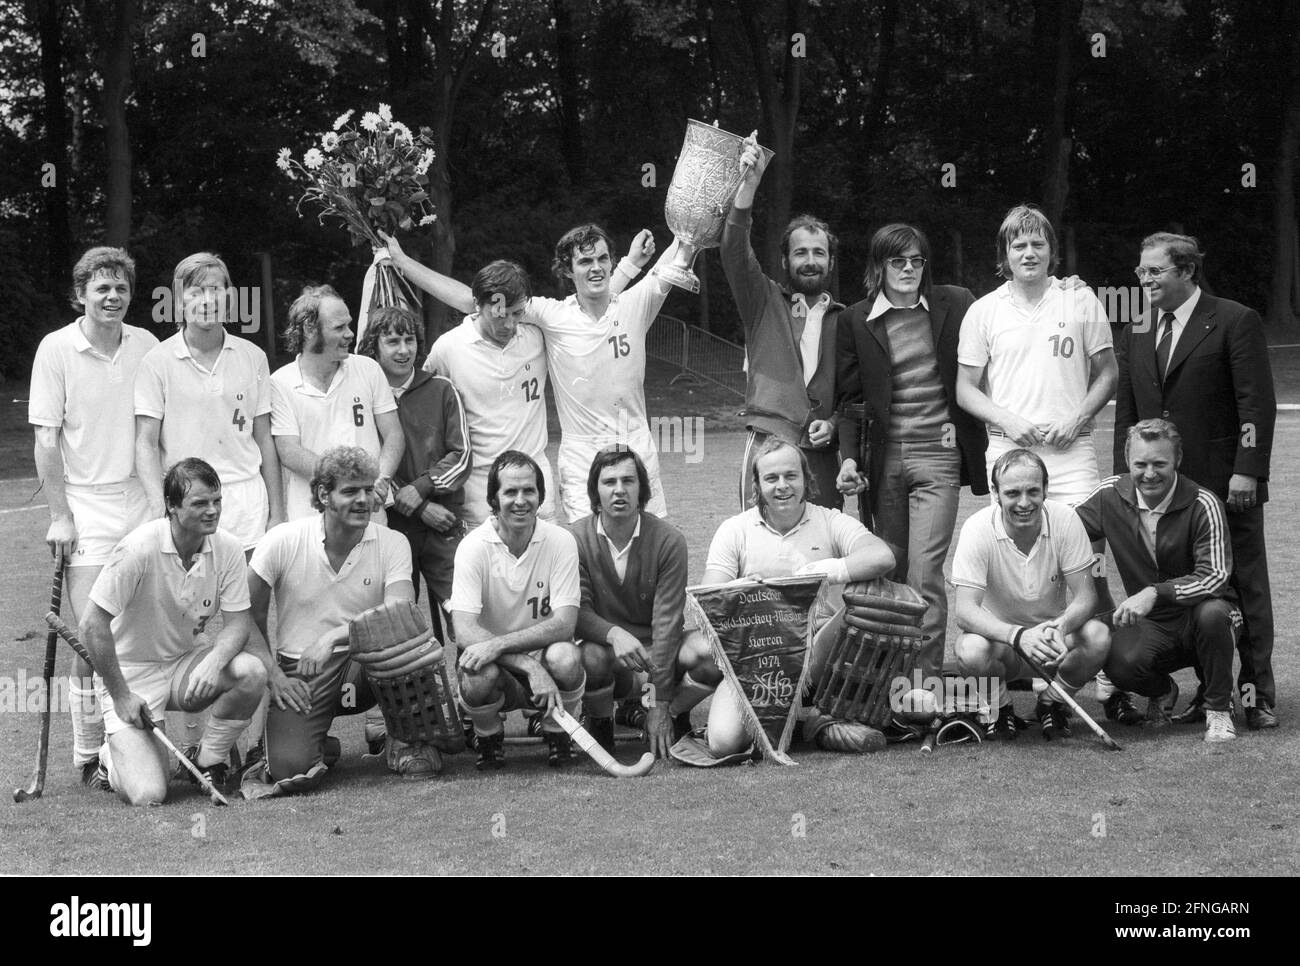 Finale du championnat allemand de hockey sur gazon pour hommes. Rot-Weiß Köln - Rüsselsheimer RK 3:1 N.V. le 29.06.1974 à Cologne. Champion de l'équipe Rot-Weiß Köln. [traduction automatique] Banque D'Images